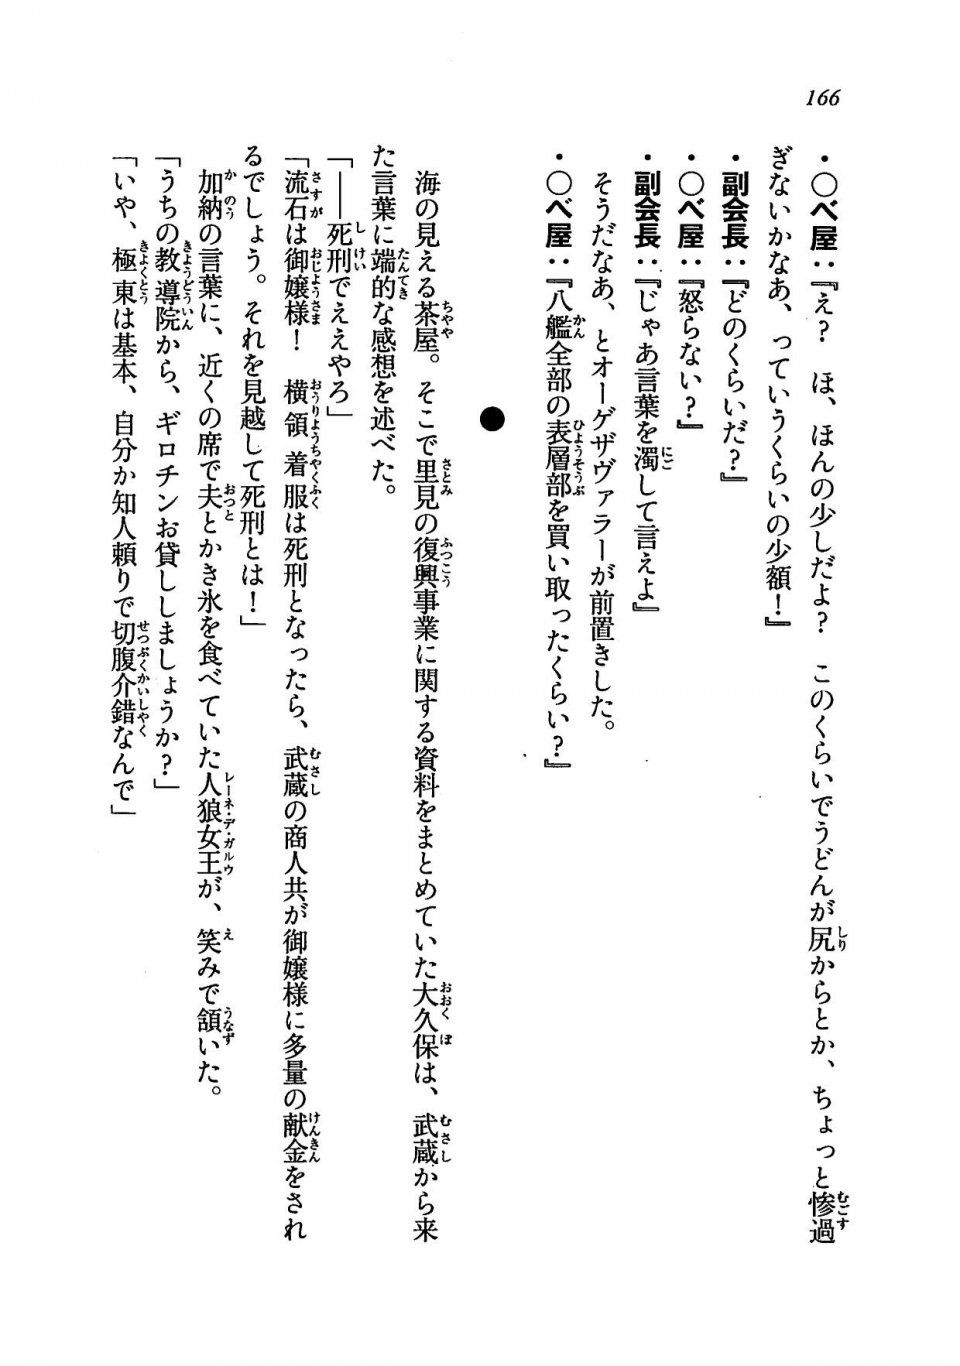 Kyoukai Senjou no Horizon LN Vol 19(8A) - Photo #166